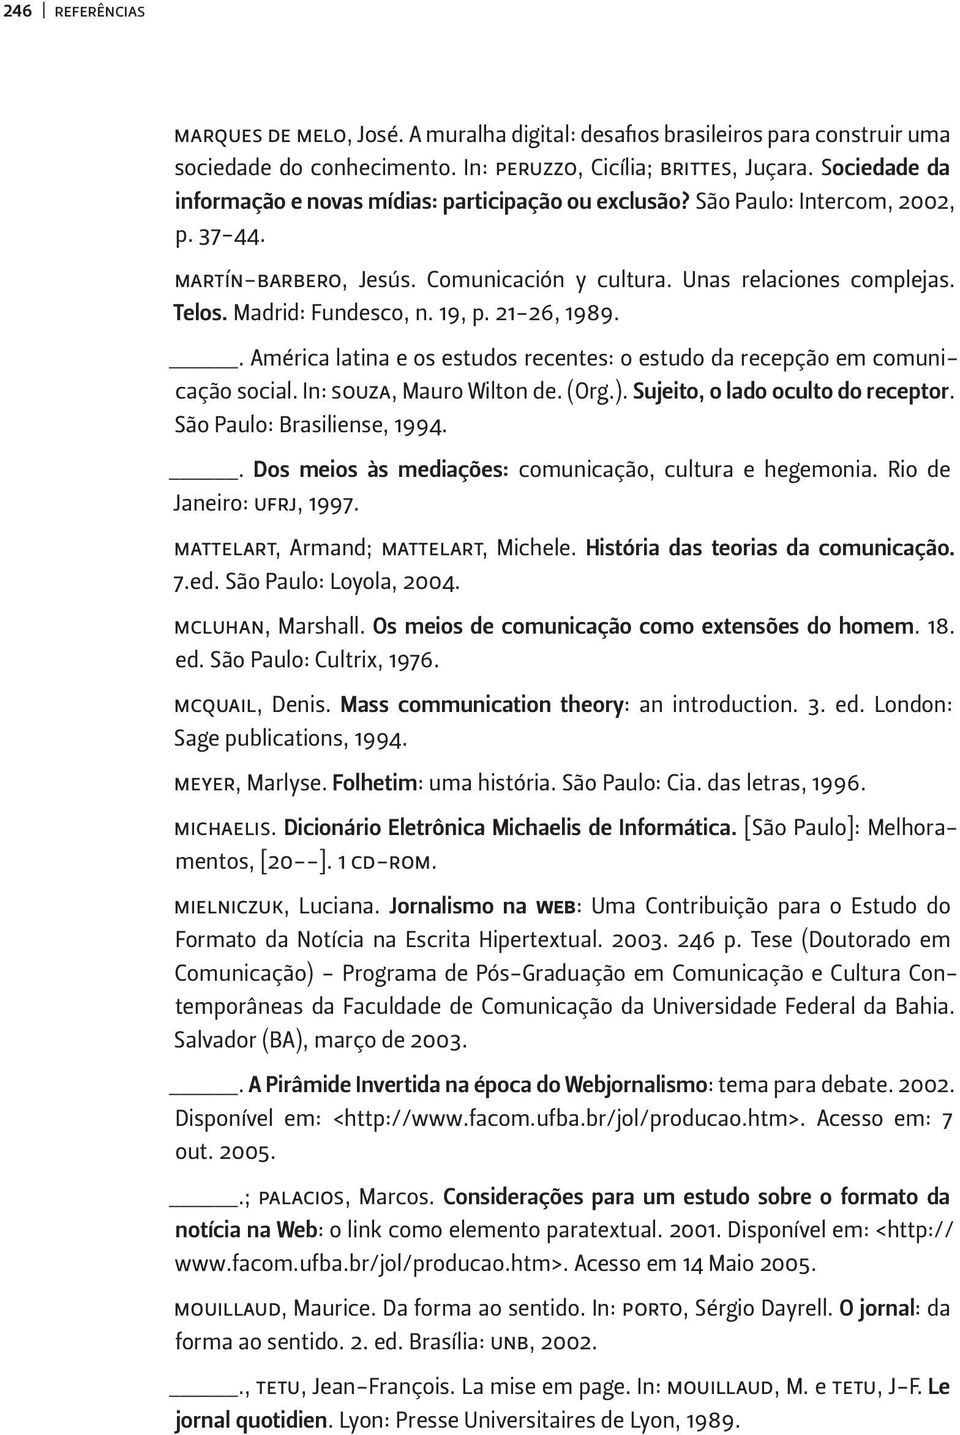 Madrid: Fundesco, n. 19, p. 21-26, 1989.. América latina e os estudos recentes: o estudo da recepção em comunicação social. In: souza, Mauro Wilton de. (Org.). Sujeito, o lado oculto do receptor.